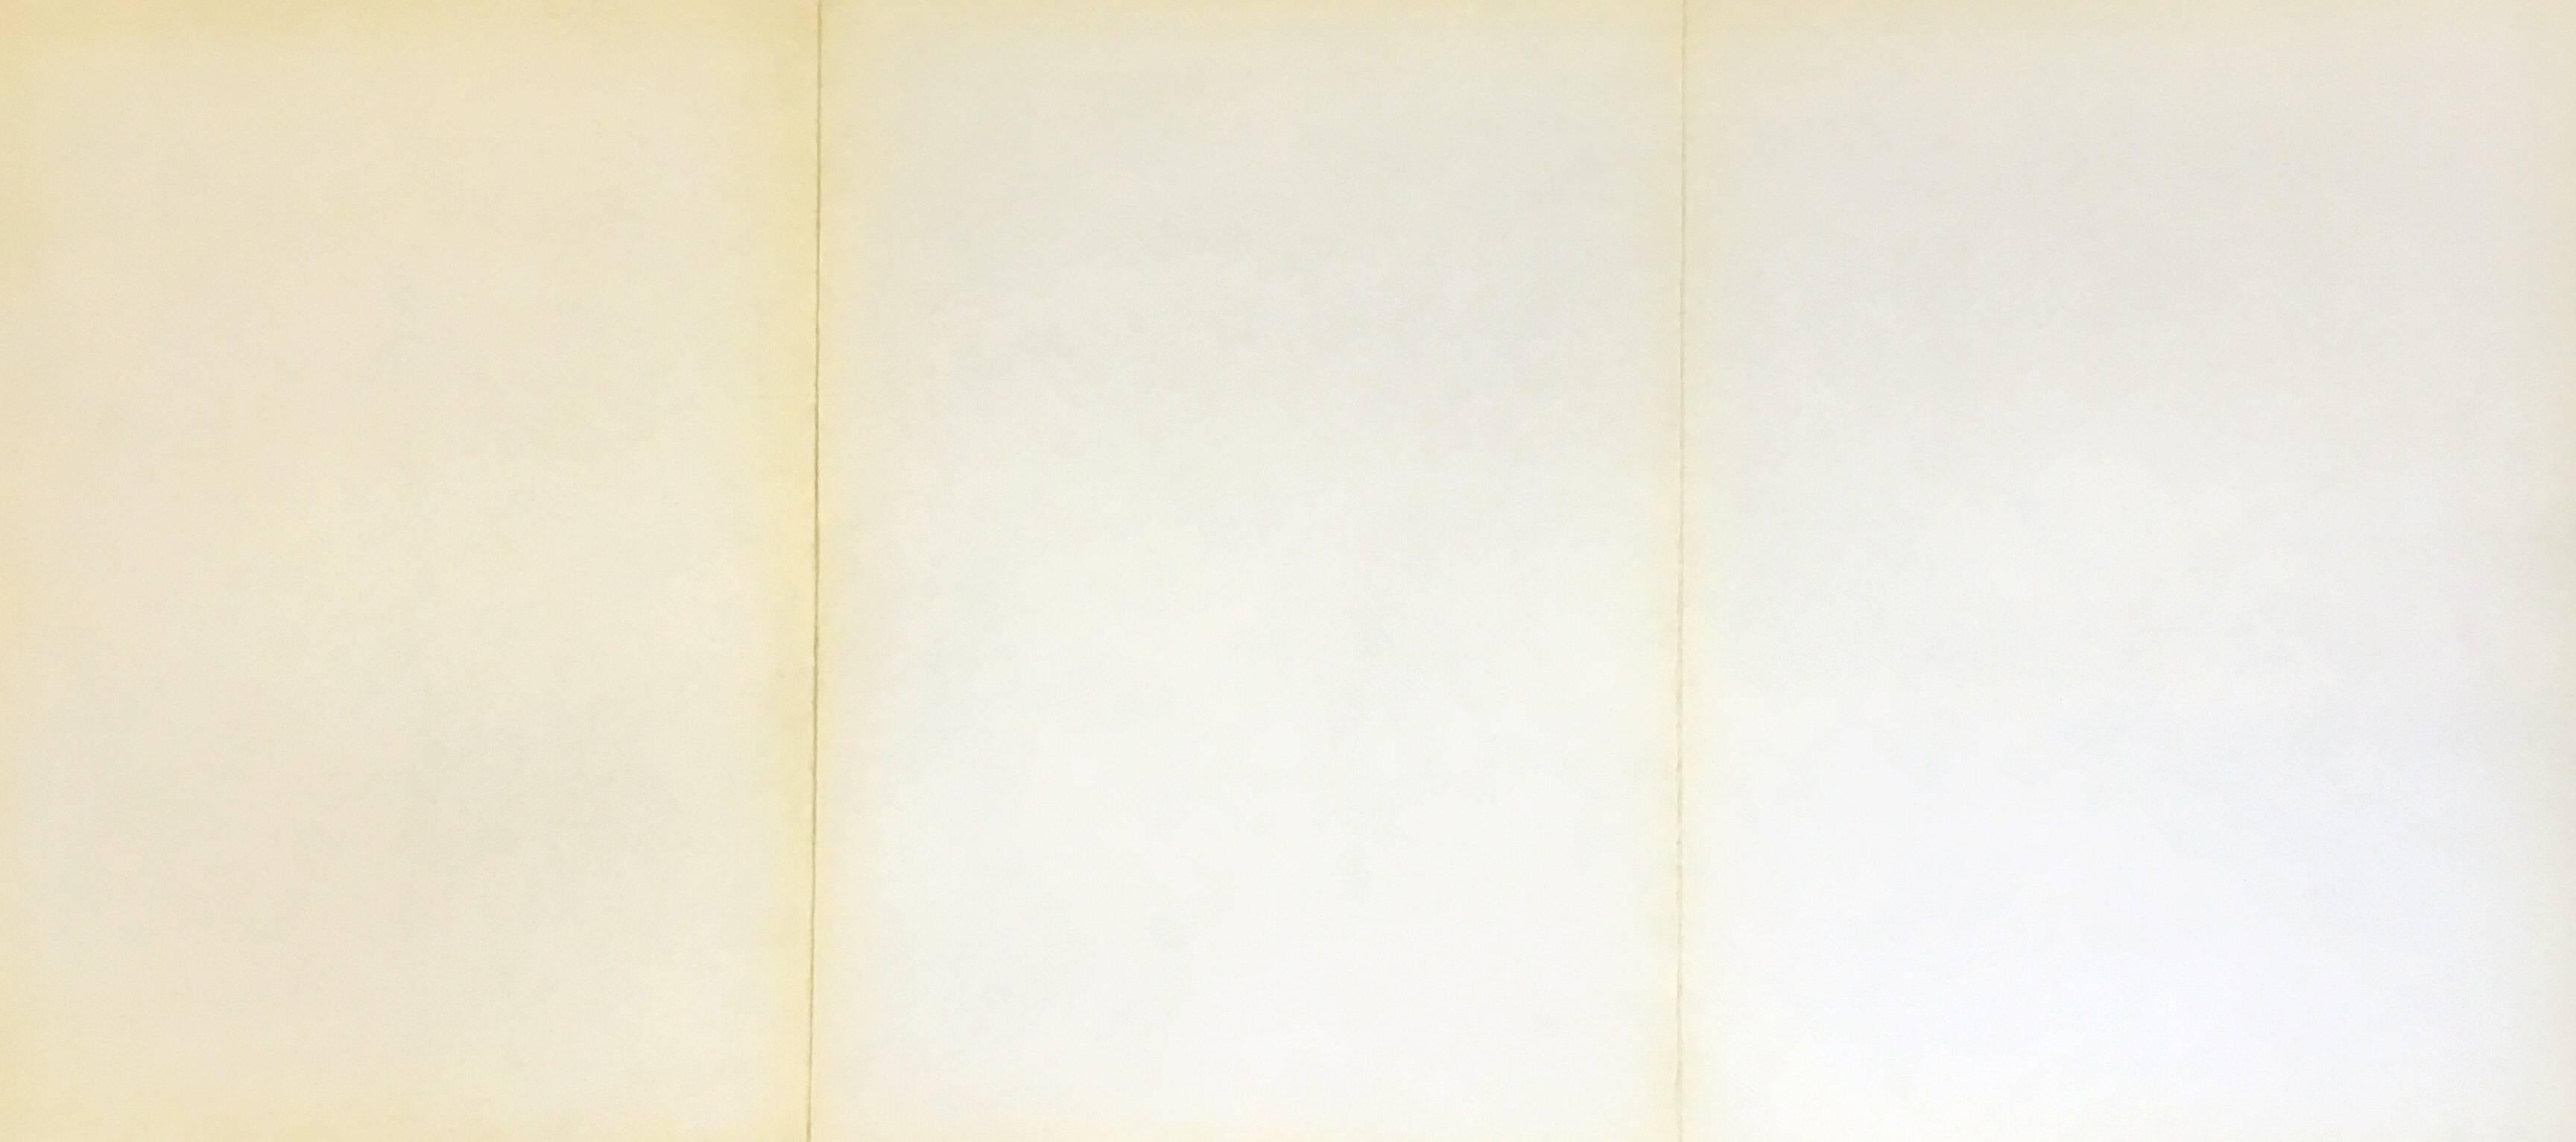 Antoni Tàpies lithograph derrière le miroir (1960s Antoni Tàpies prints) For Sale 1